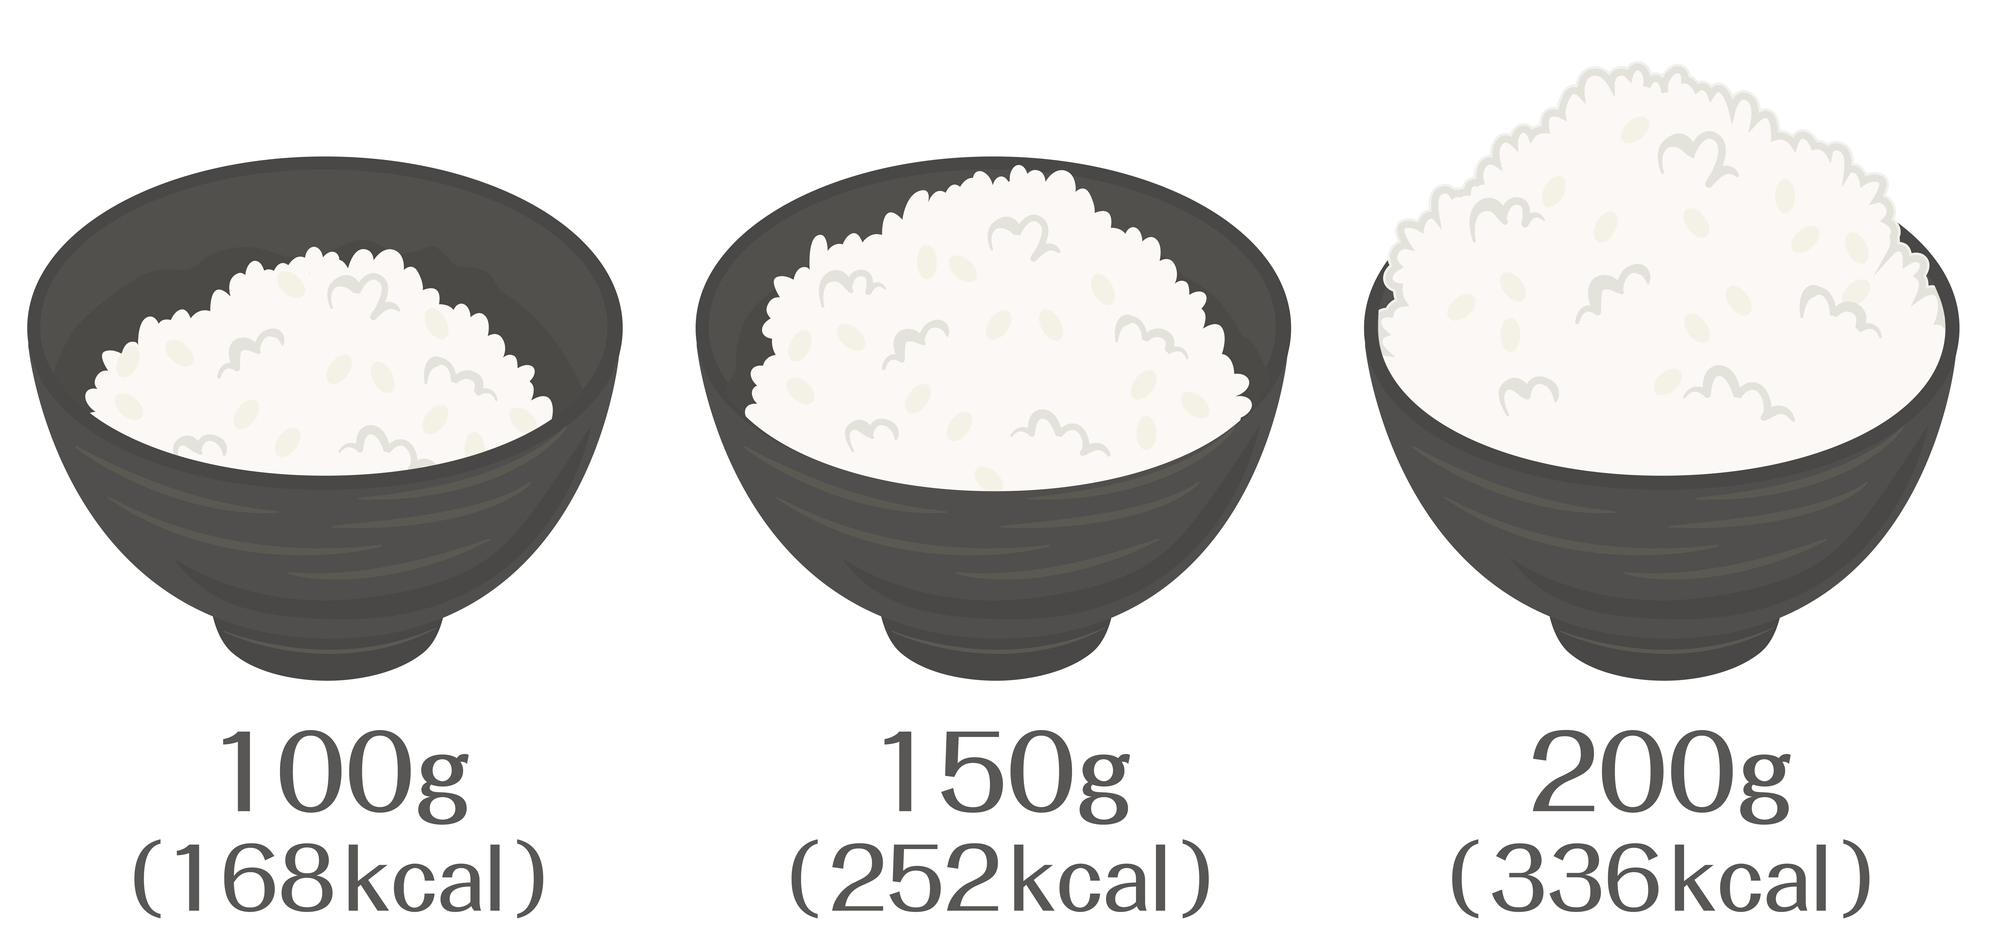 物理的に食事量を減らすために、小さな食器を使う。ごはん100gは168kcal、150gは252kcal、200gは336kcalのイメージ画像